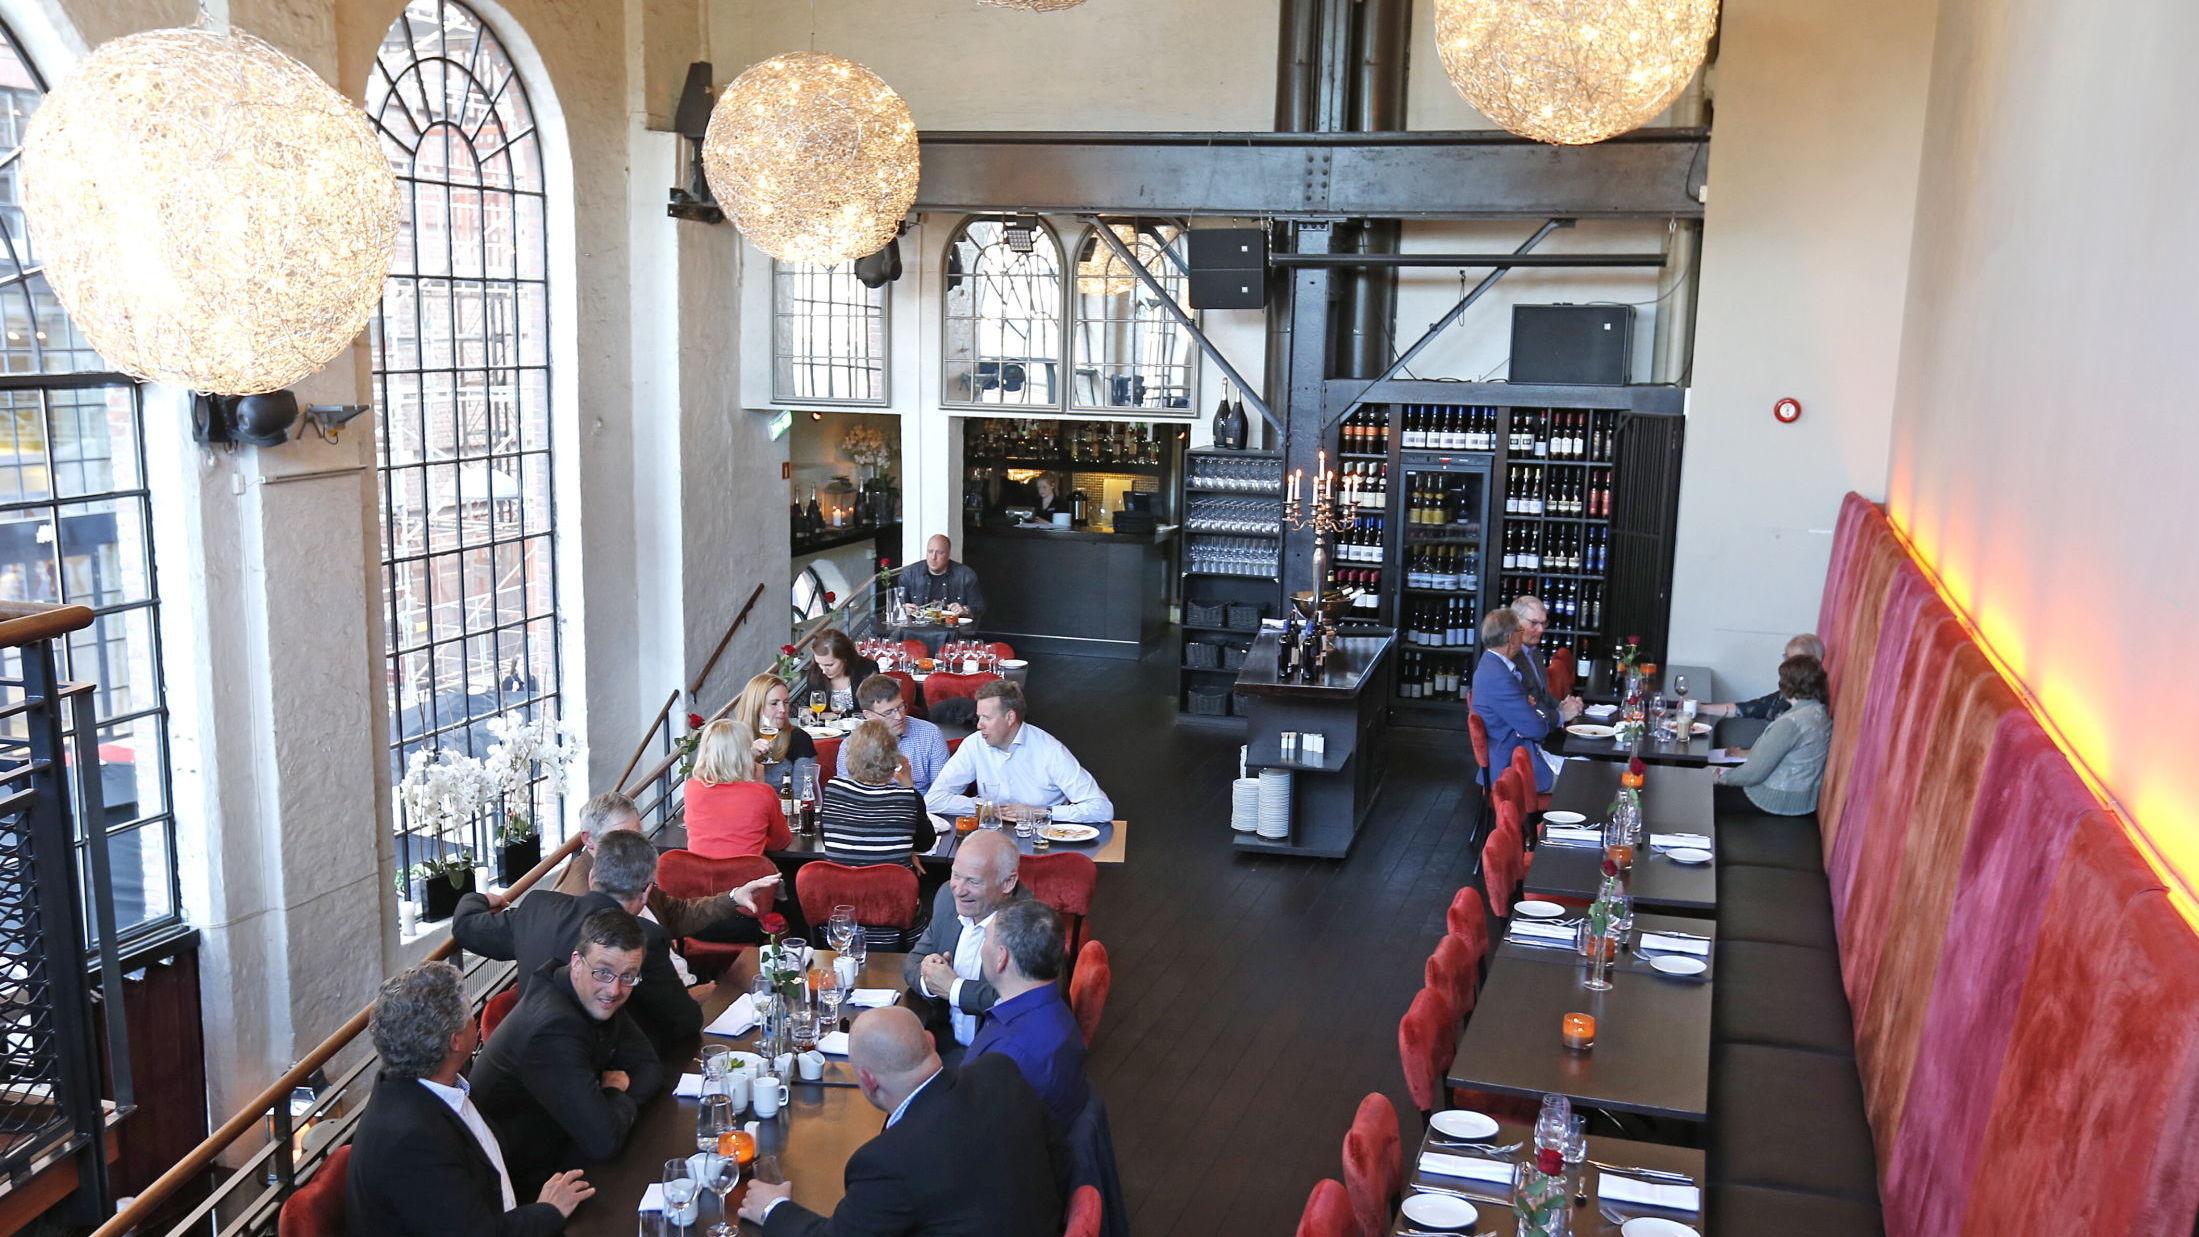 BELEILIG: VGs anmelder mener restauranten er praktisk hvis man skal rett på show, men kan likevel bli et smule stressende måltid. Foto: Trond Solberg/VG